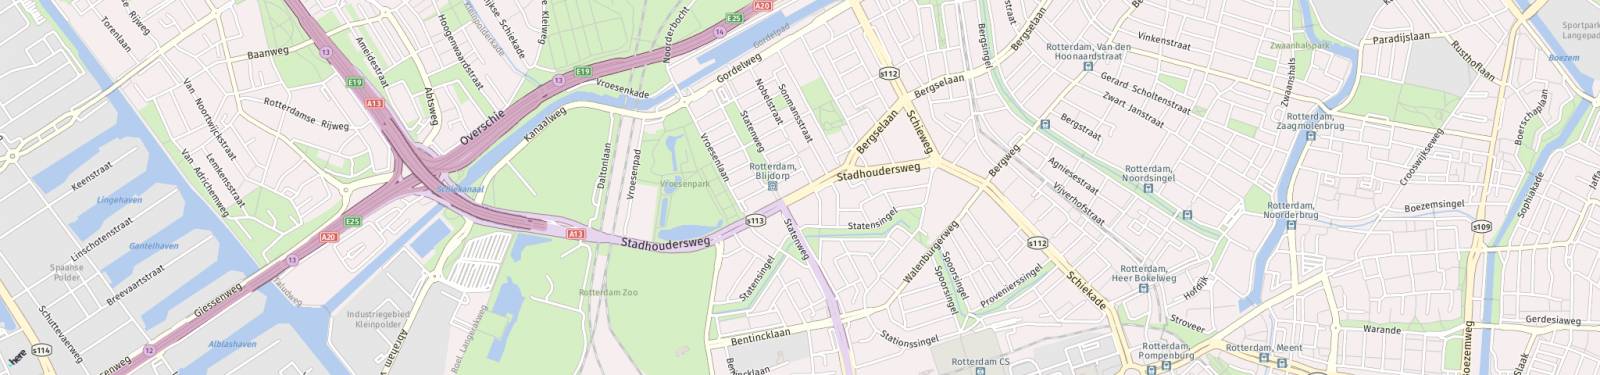 Kaart met locatie Appartement Stadhoudersweg